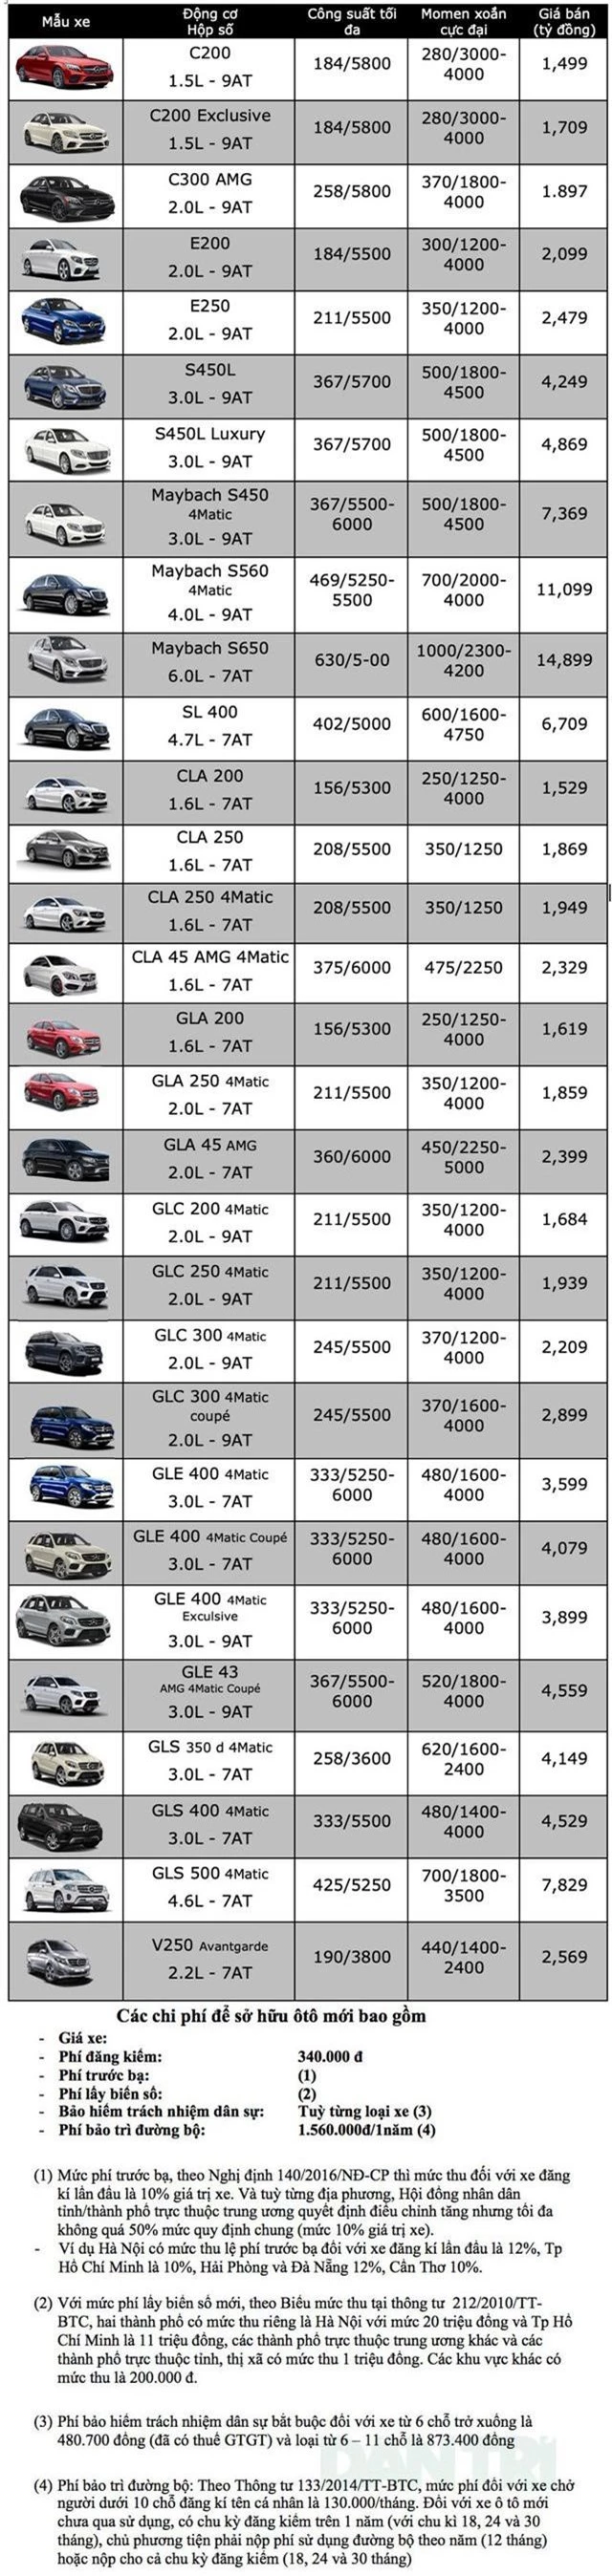 Bảng giá Mercedes-Benz tại Việt Nam cập nhật tháng 4/2019 - 1